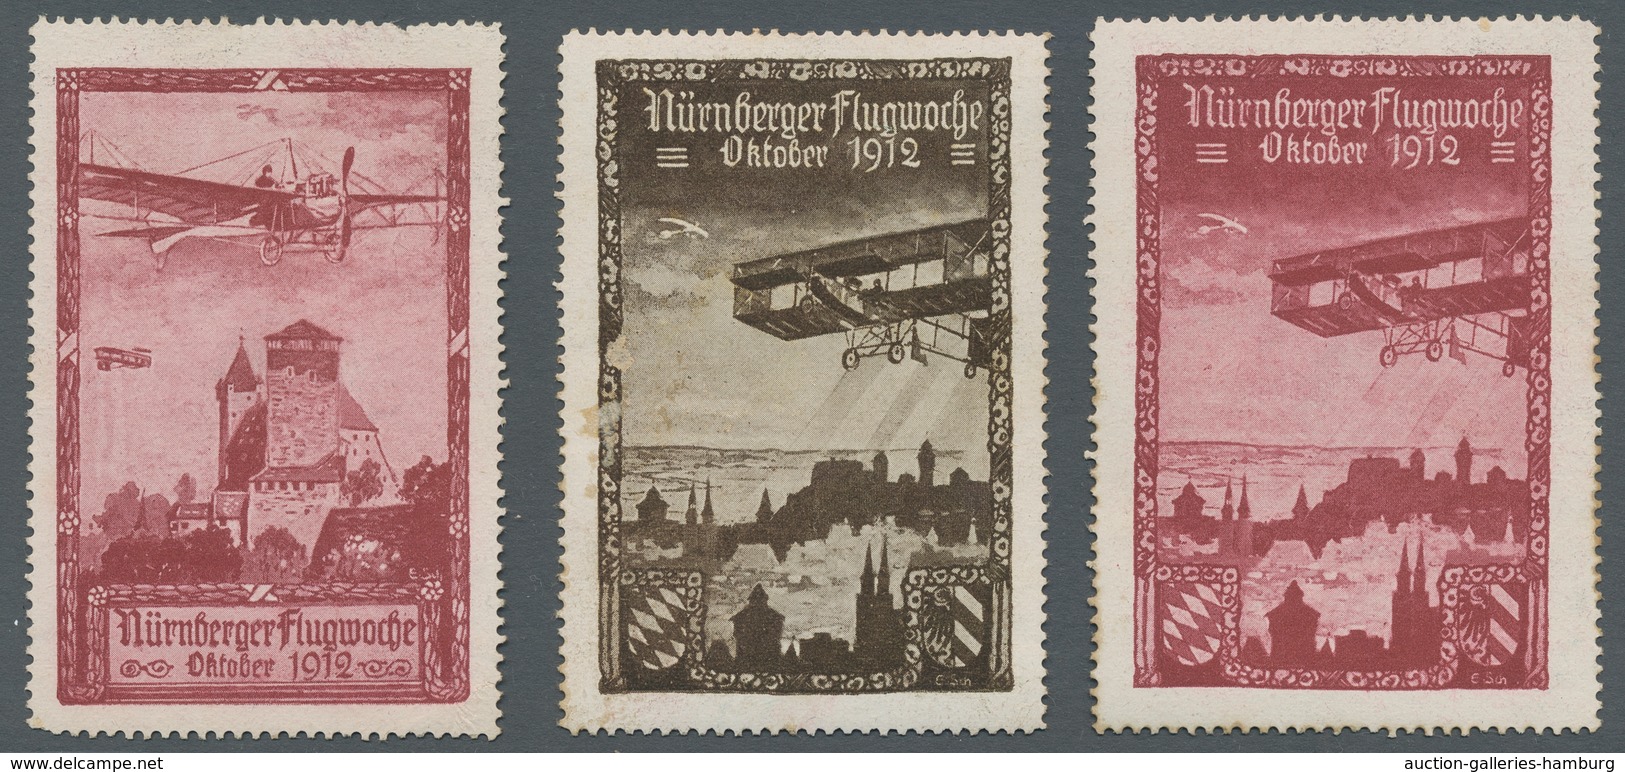 Flugpost Deutschland: 1912-1916, Partie von 10 verschiedenen ungebrauchten Ansichtskarten und einer